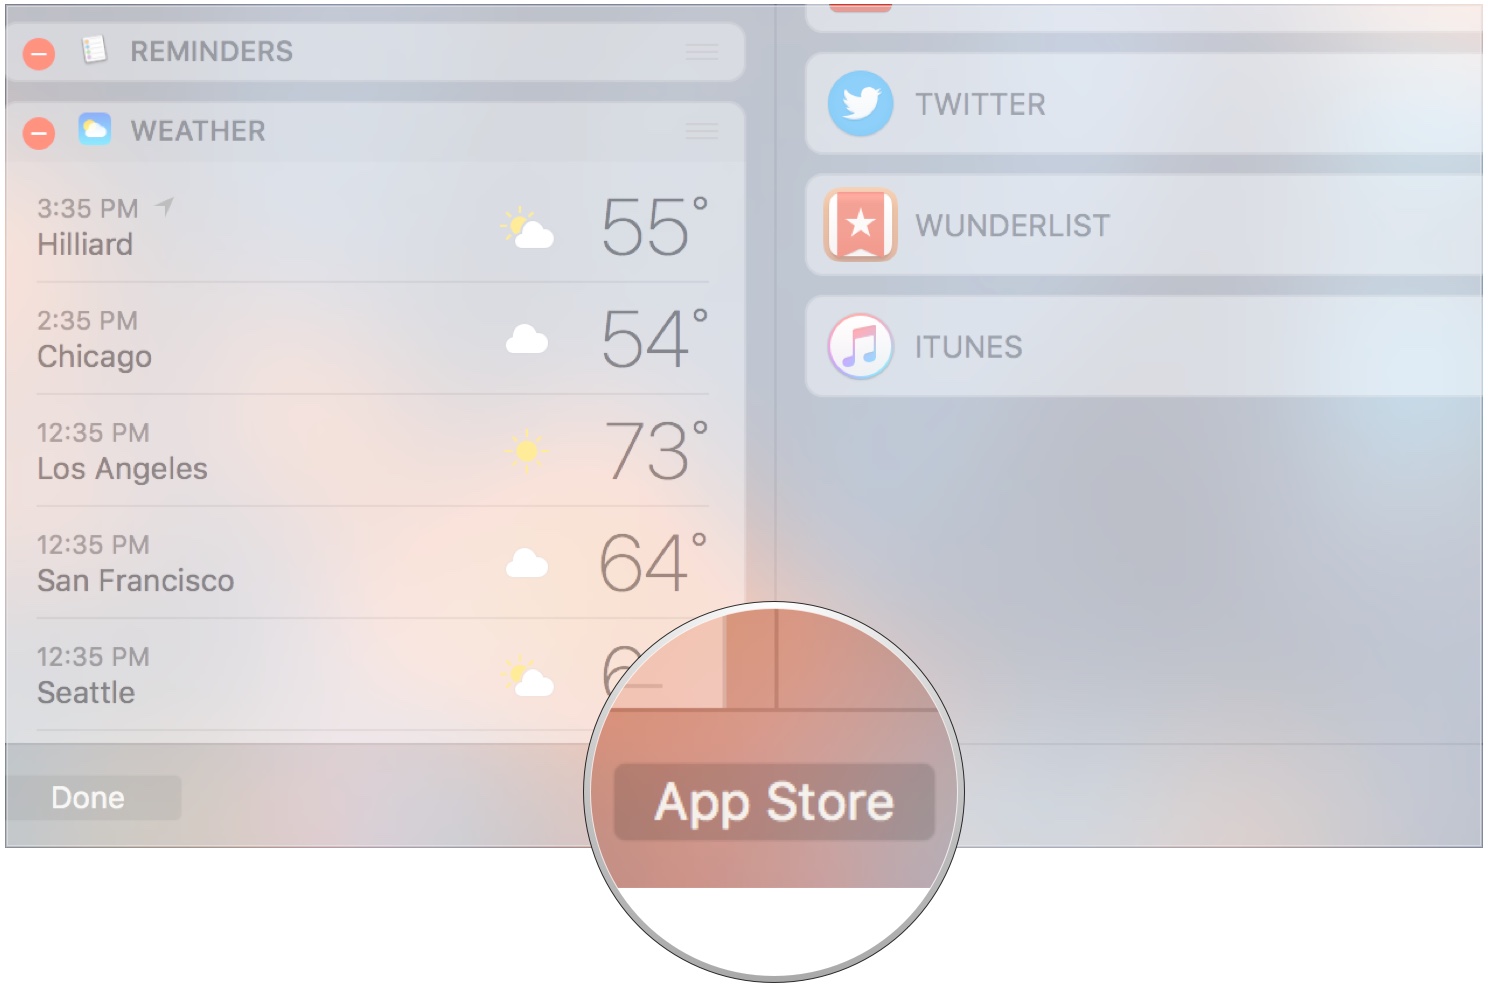 Нажмите App Store, чтобы увидеть больше виджетов.